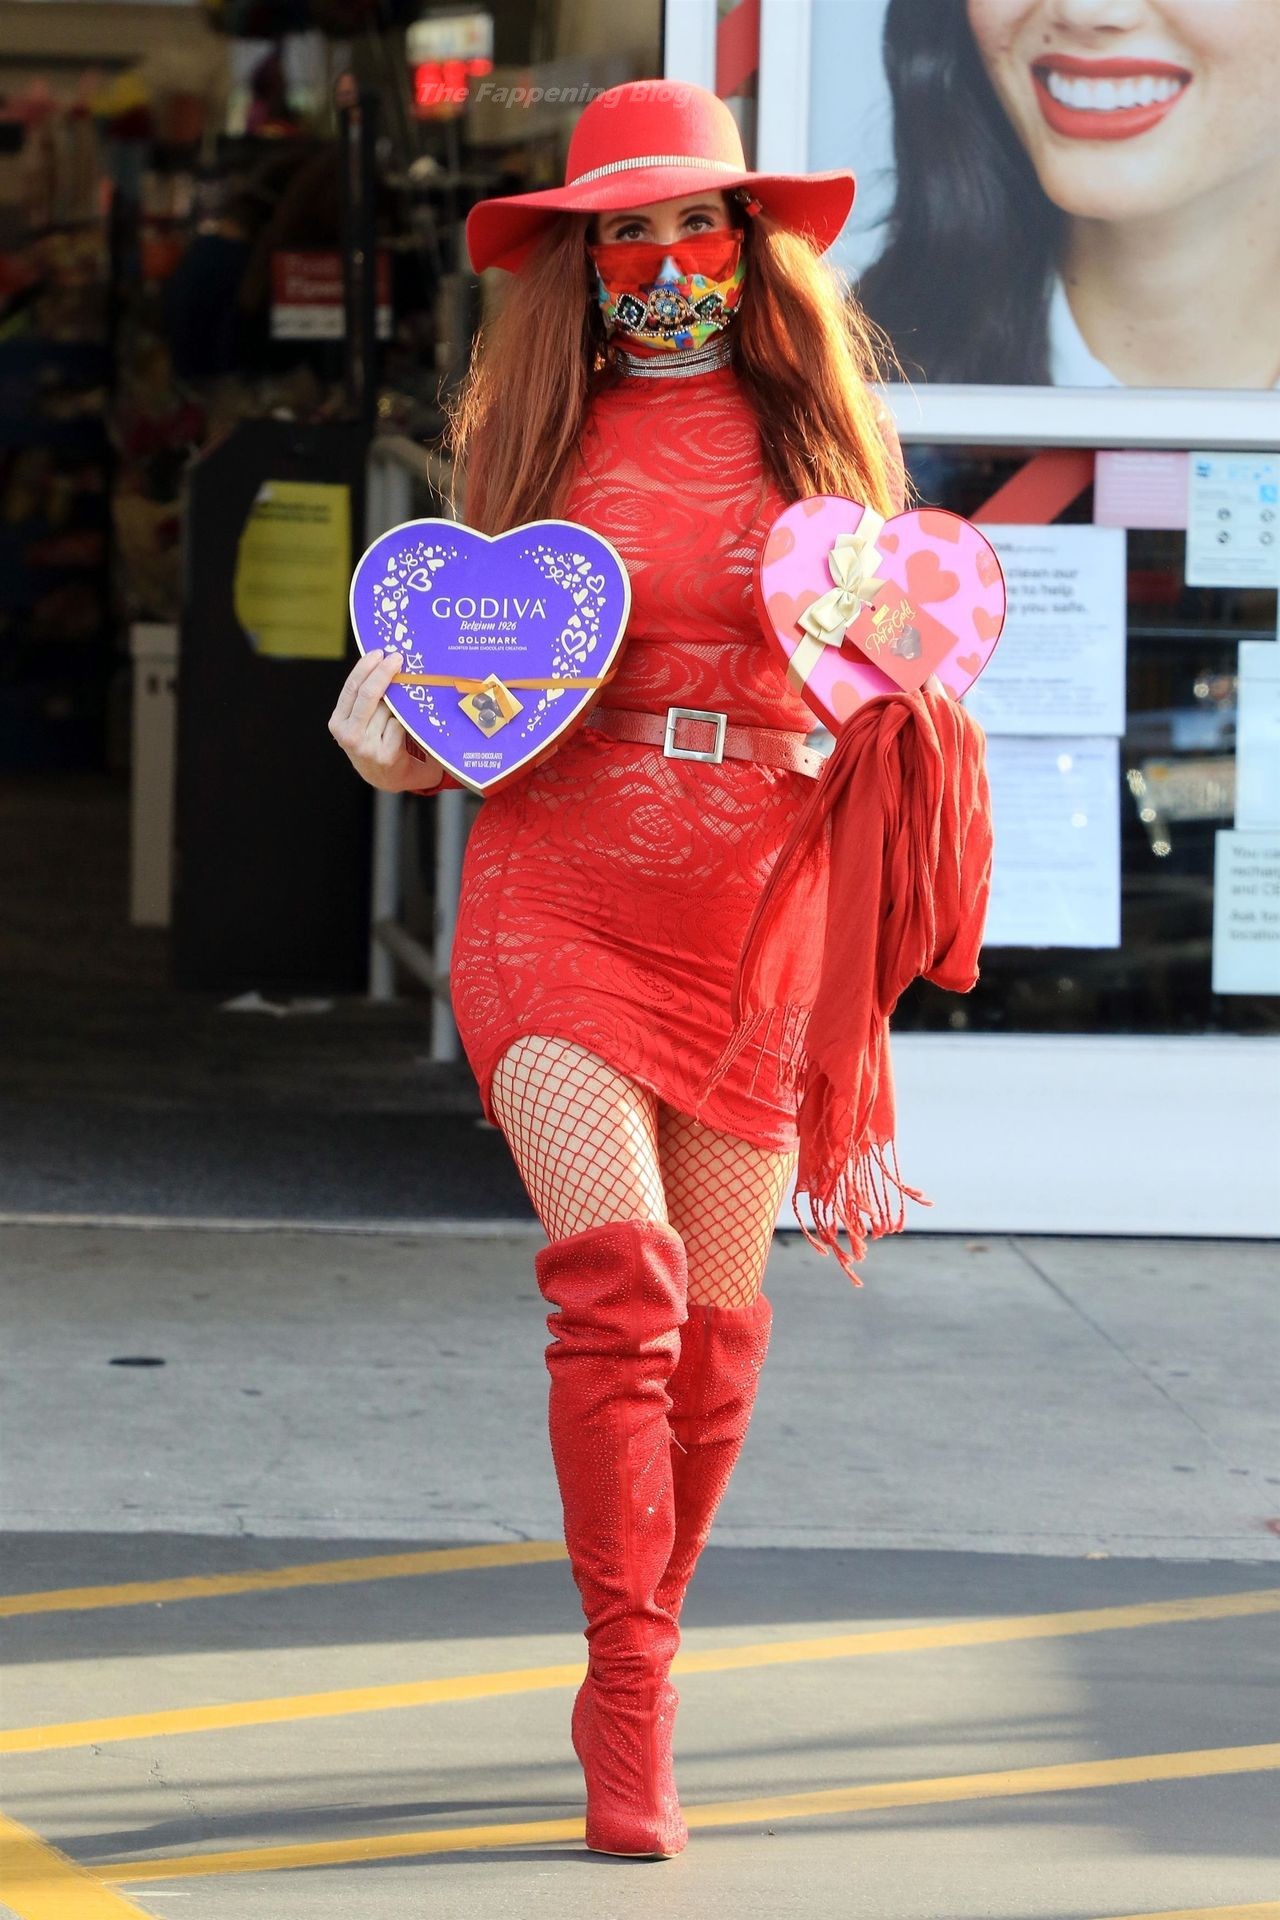 Phoebe Price is Seen Celebrating Valentine’s Day in LA (30 Photos)